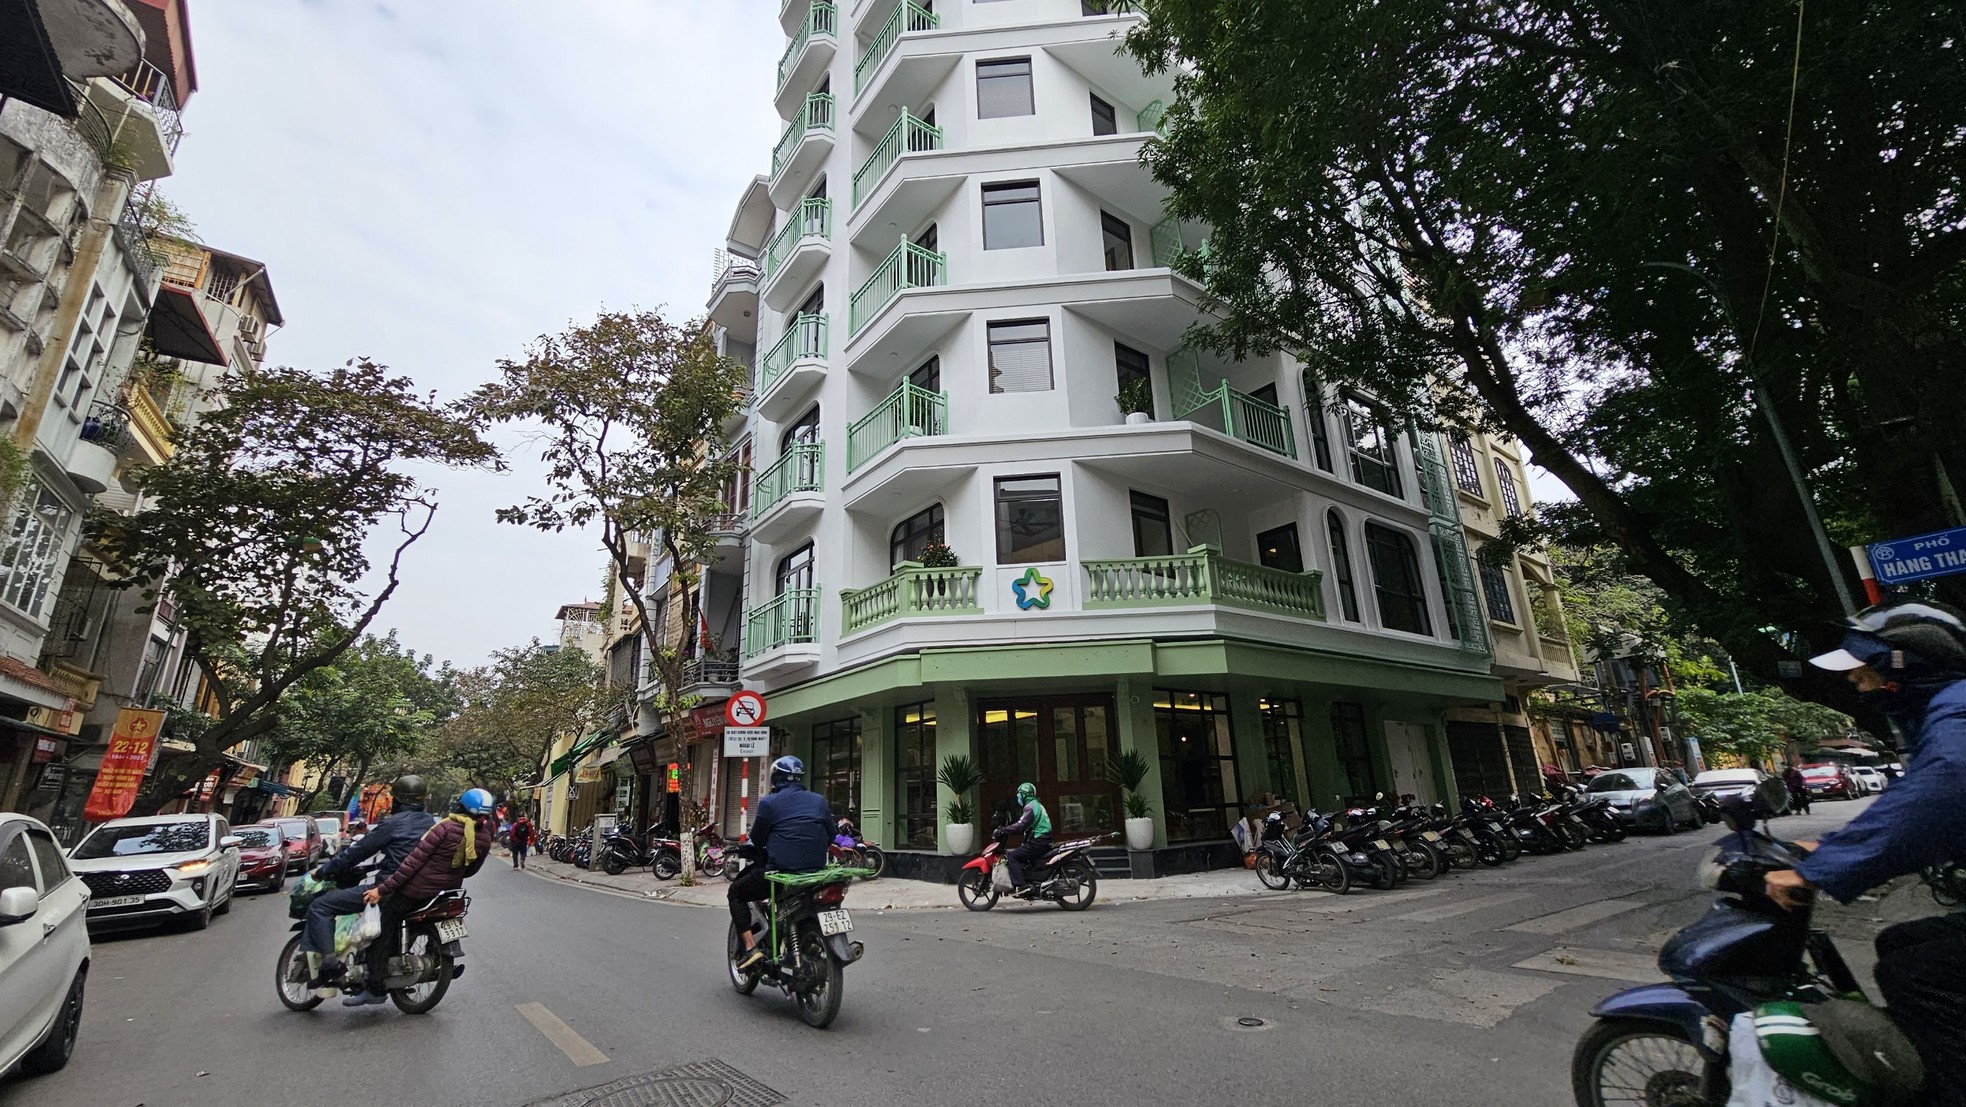 Cao ốc 10 tầng quận trung tâm không tìm thấy hồ sơ cấp phép khi Hà Nội yêu cầu làm rõ - Ảnh 9.